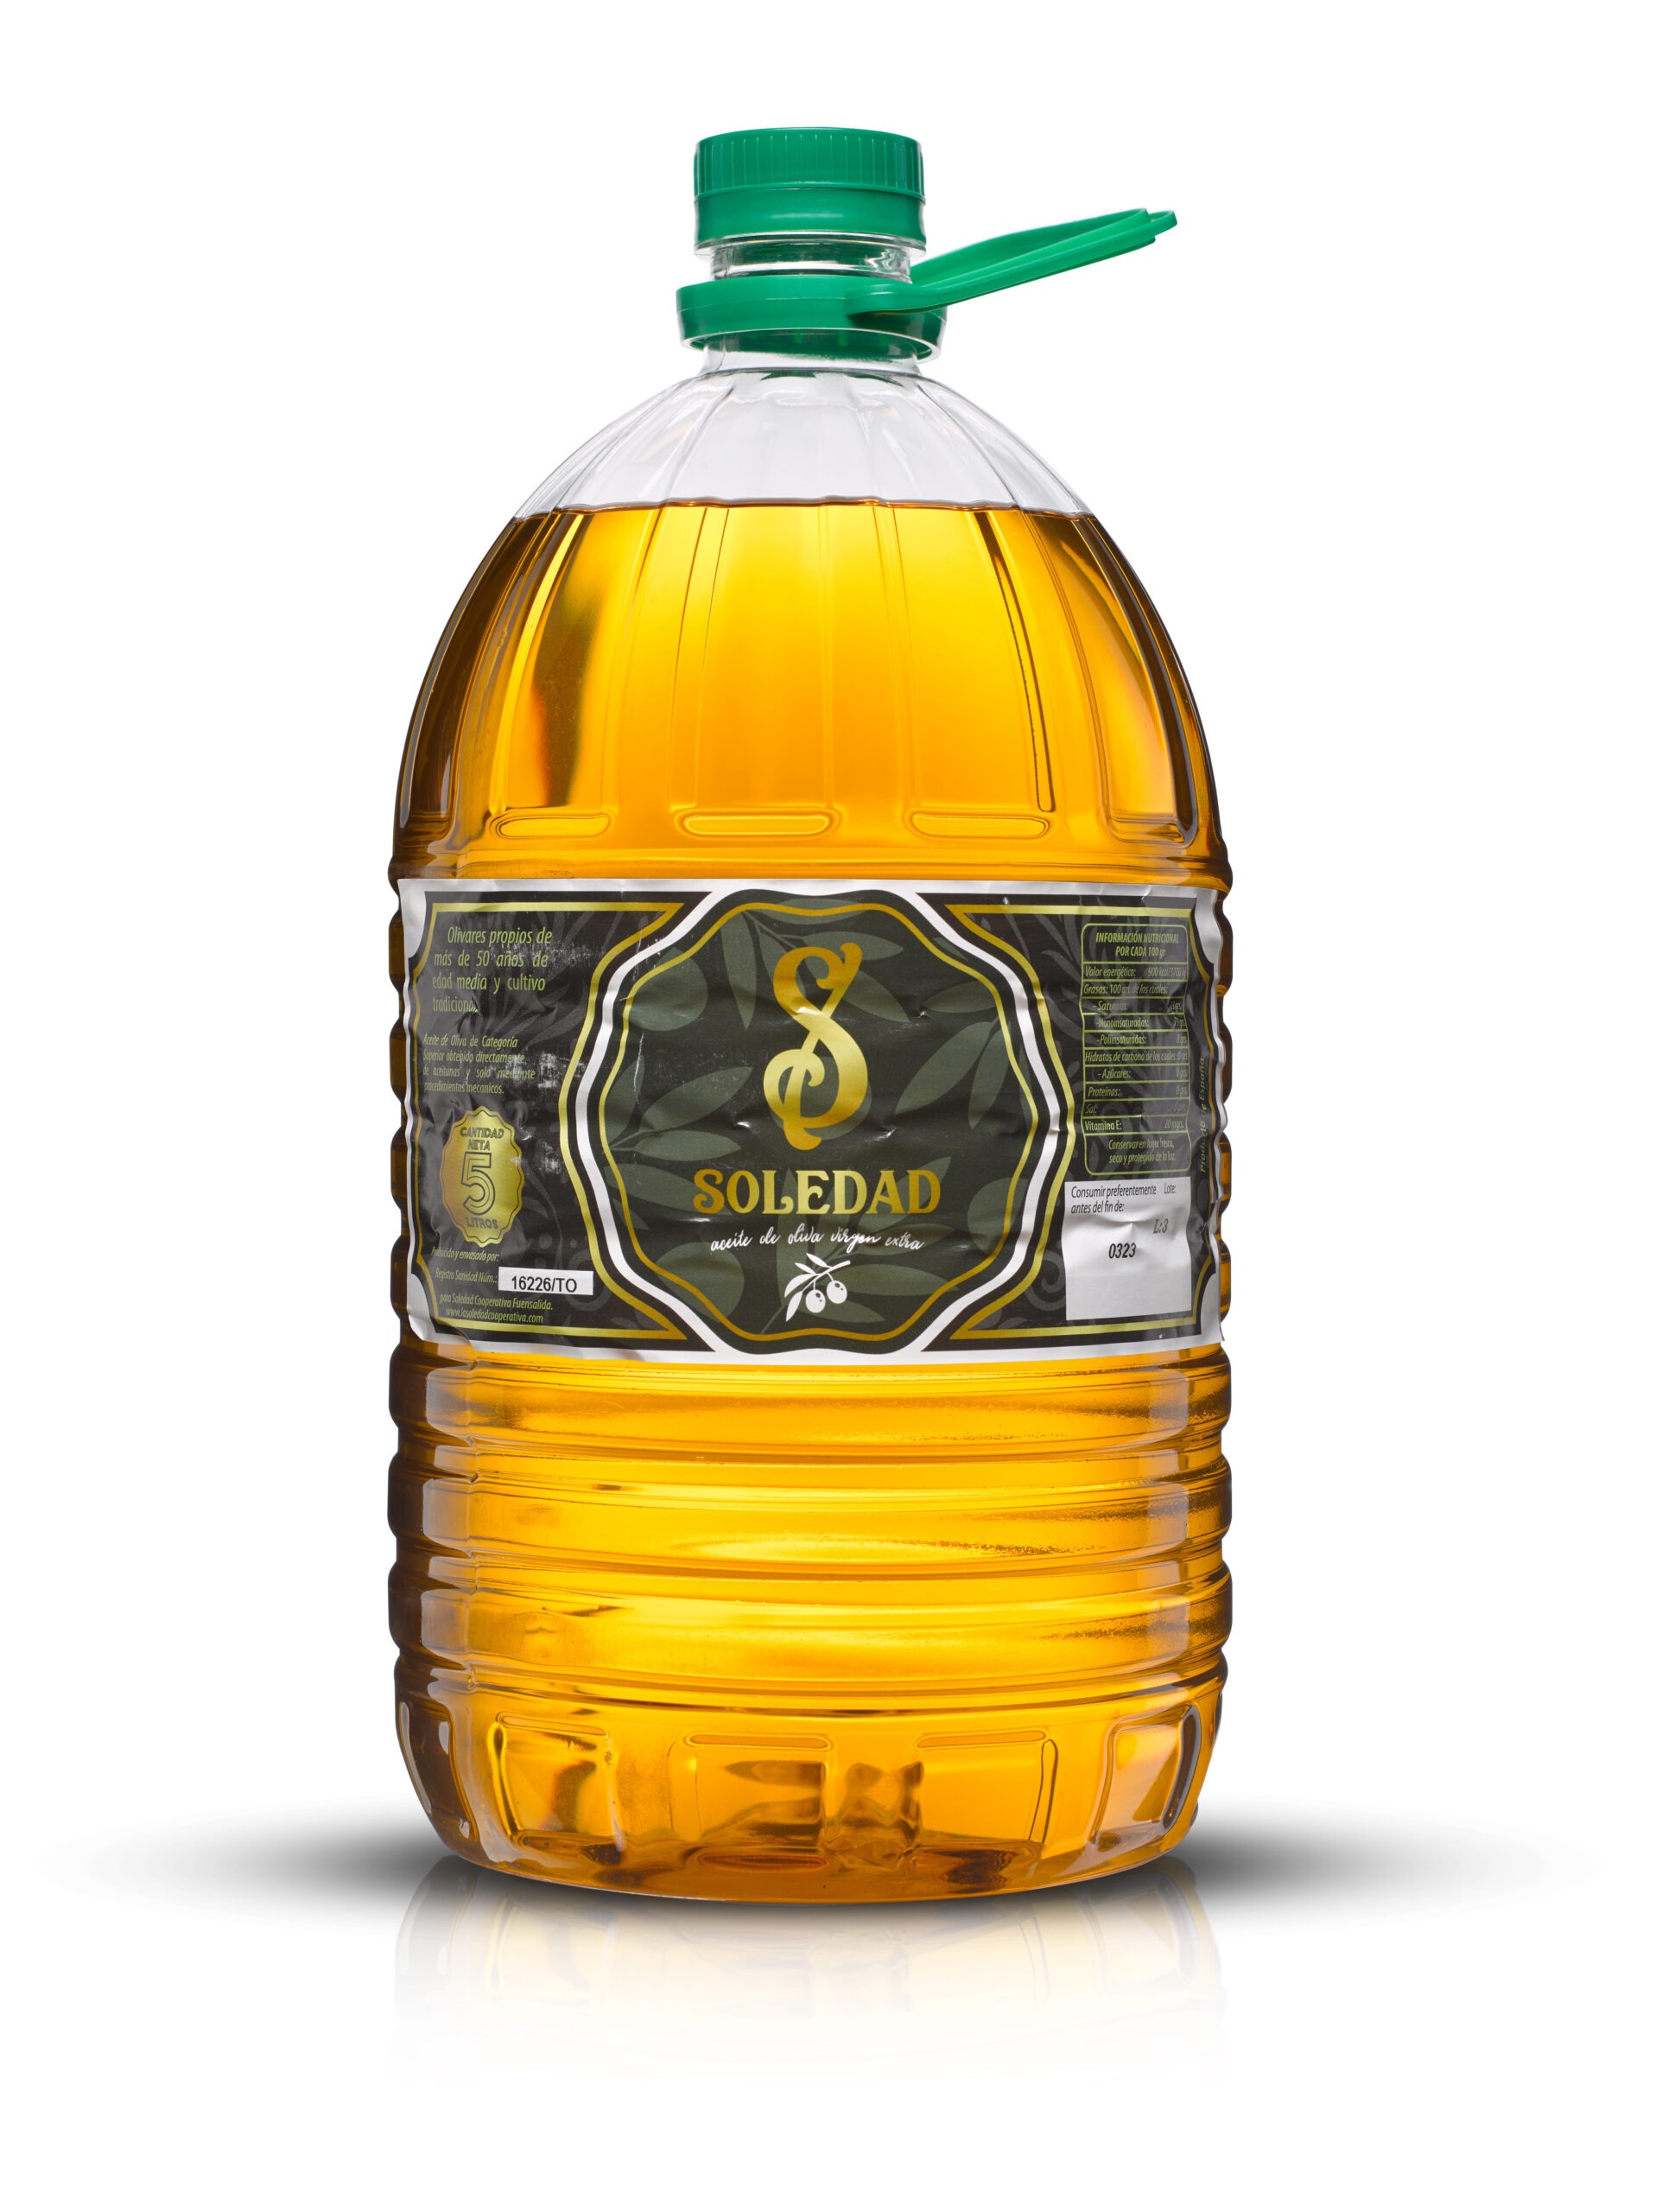 Caja de 3 garrafas de 5L de aceite de oliva virgen extra – Aceites  Guadalimar